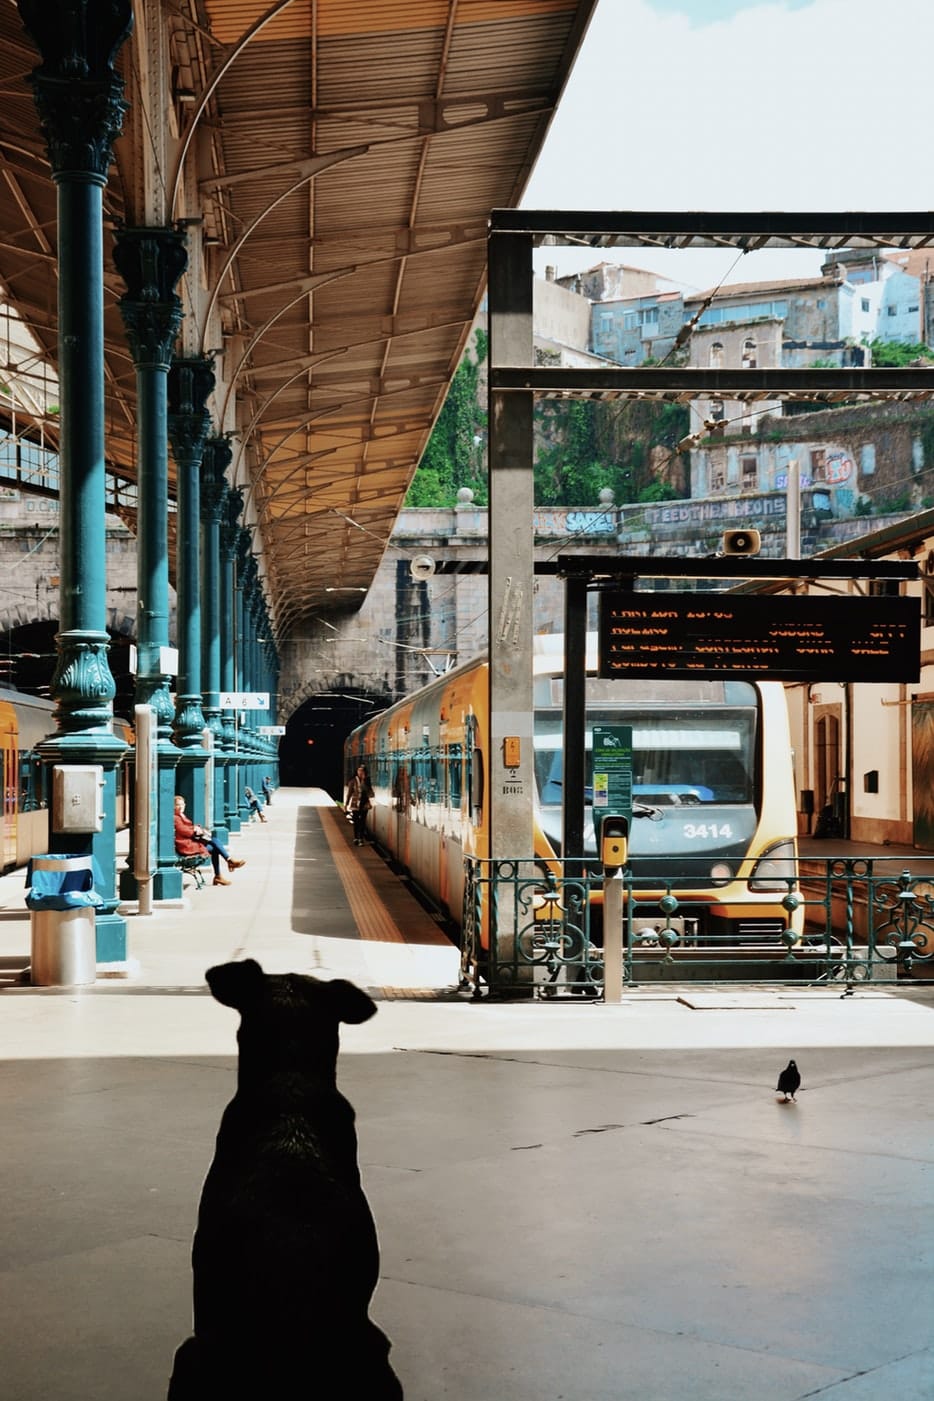 Cosa deve avere il cane per viaggiare in treno?